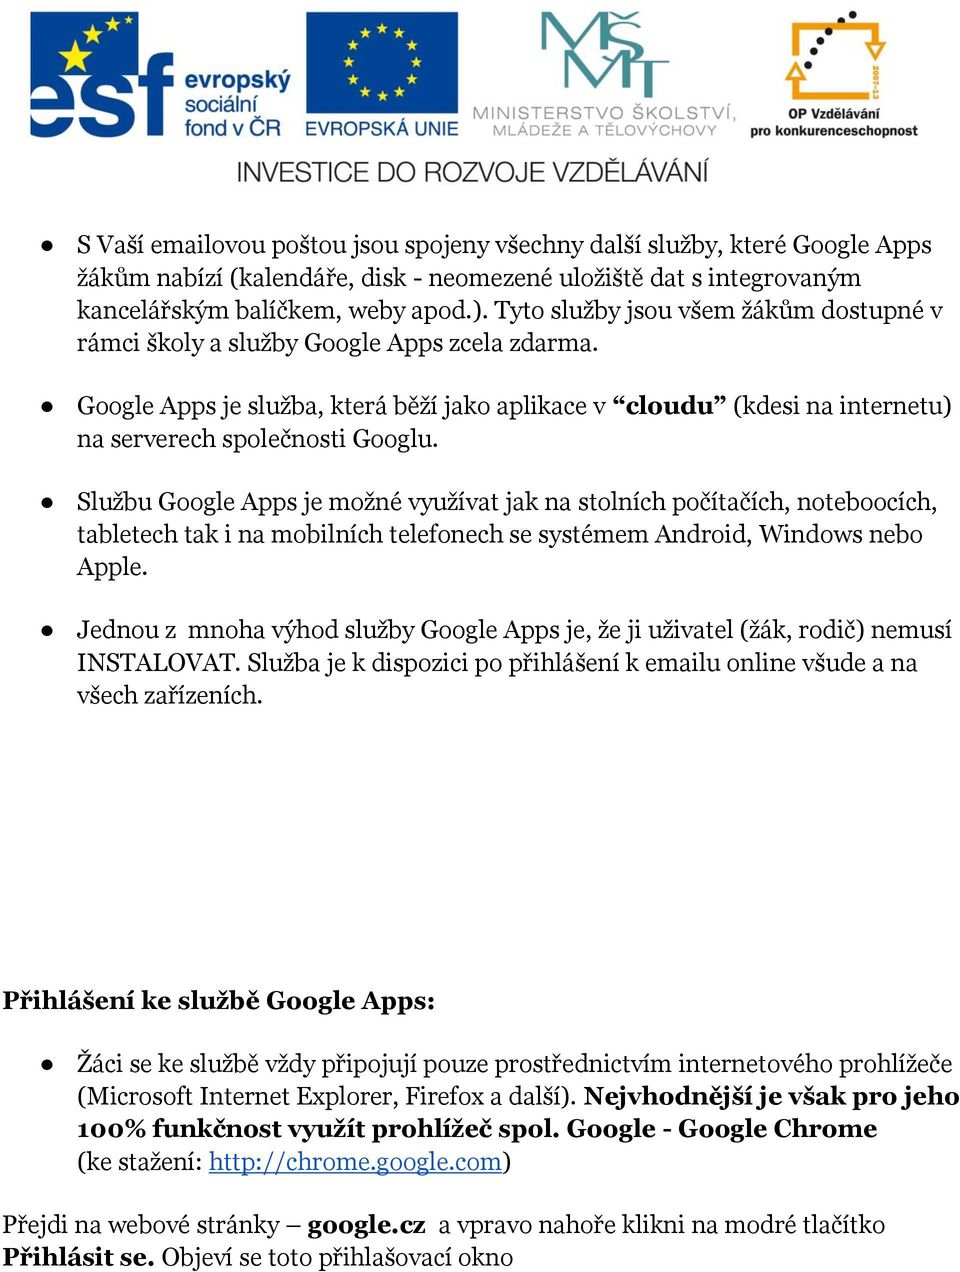 Službu Google Apps je možné využívat jak na stolních počítačích, noteboocích, tabletech tak i na mobilních telefonech se systémem Android, Windows nebo Apple.